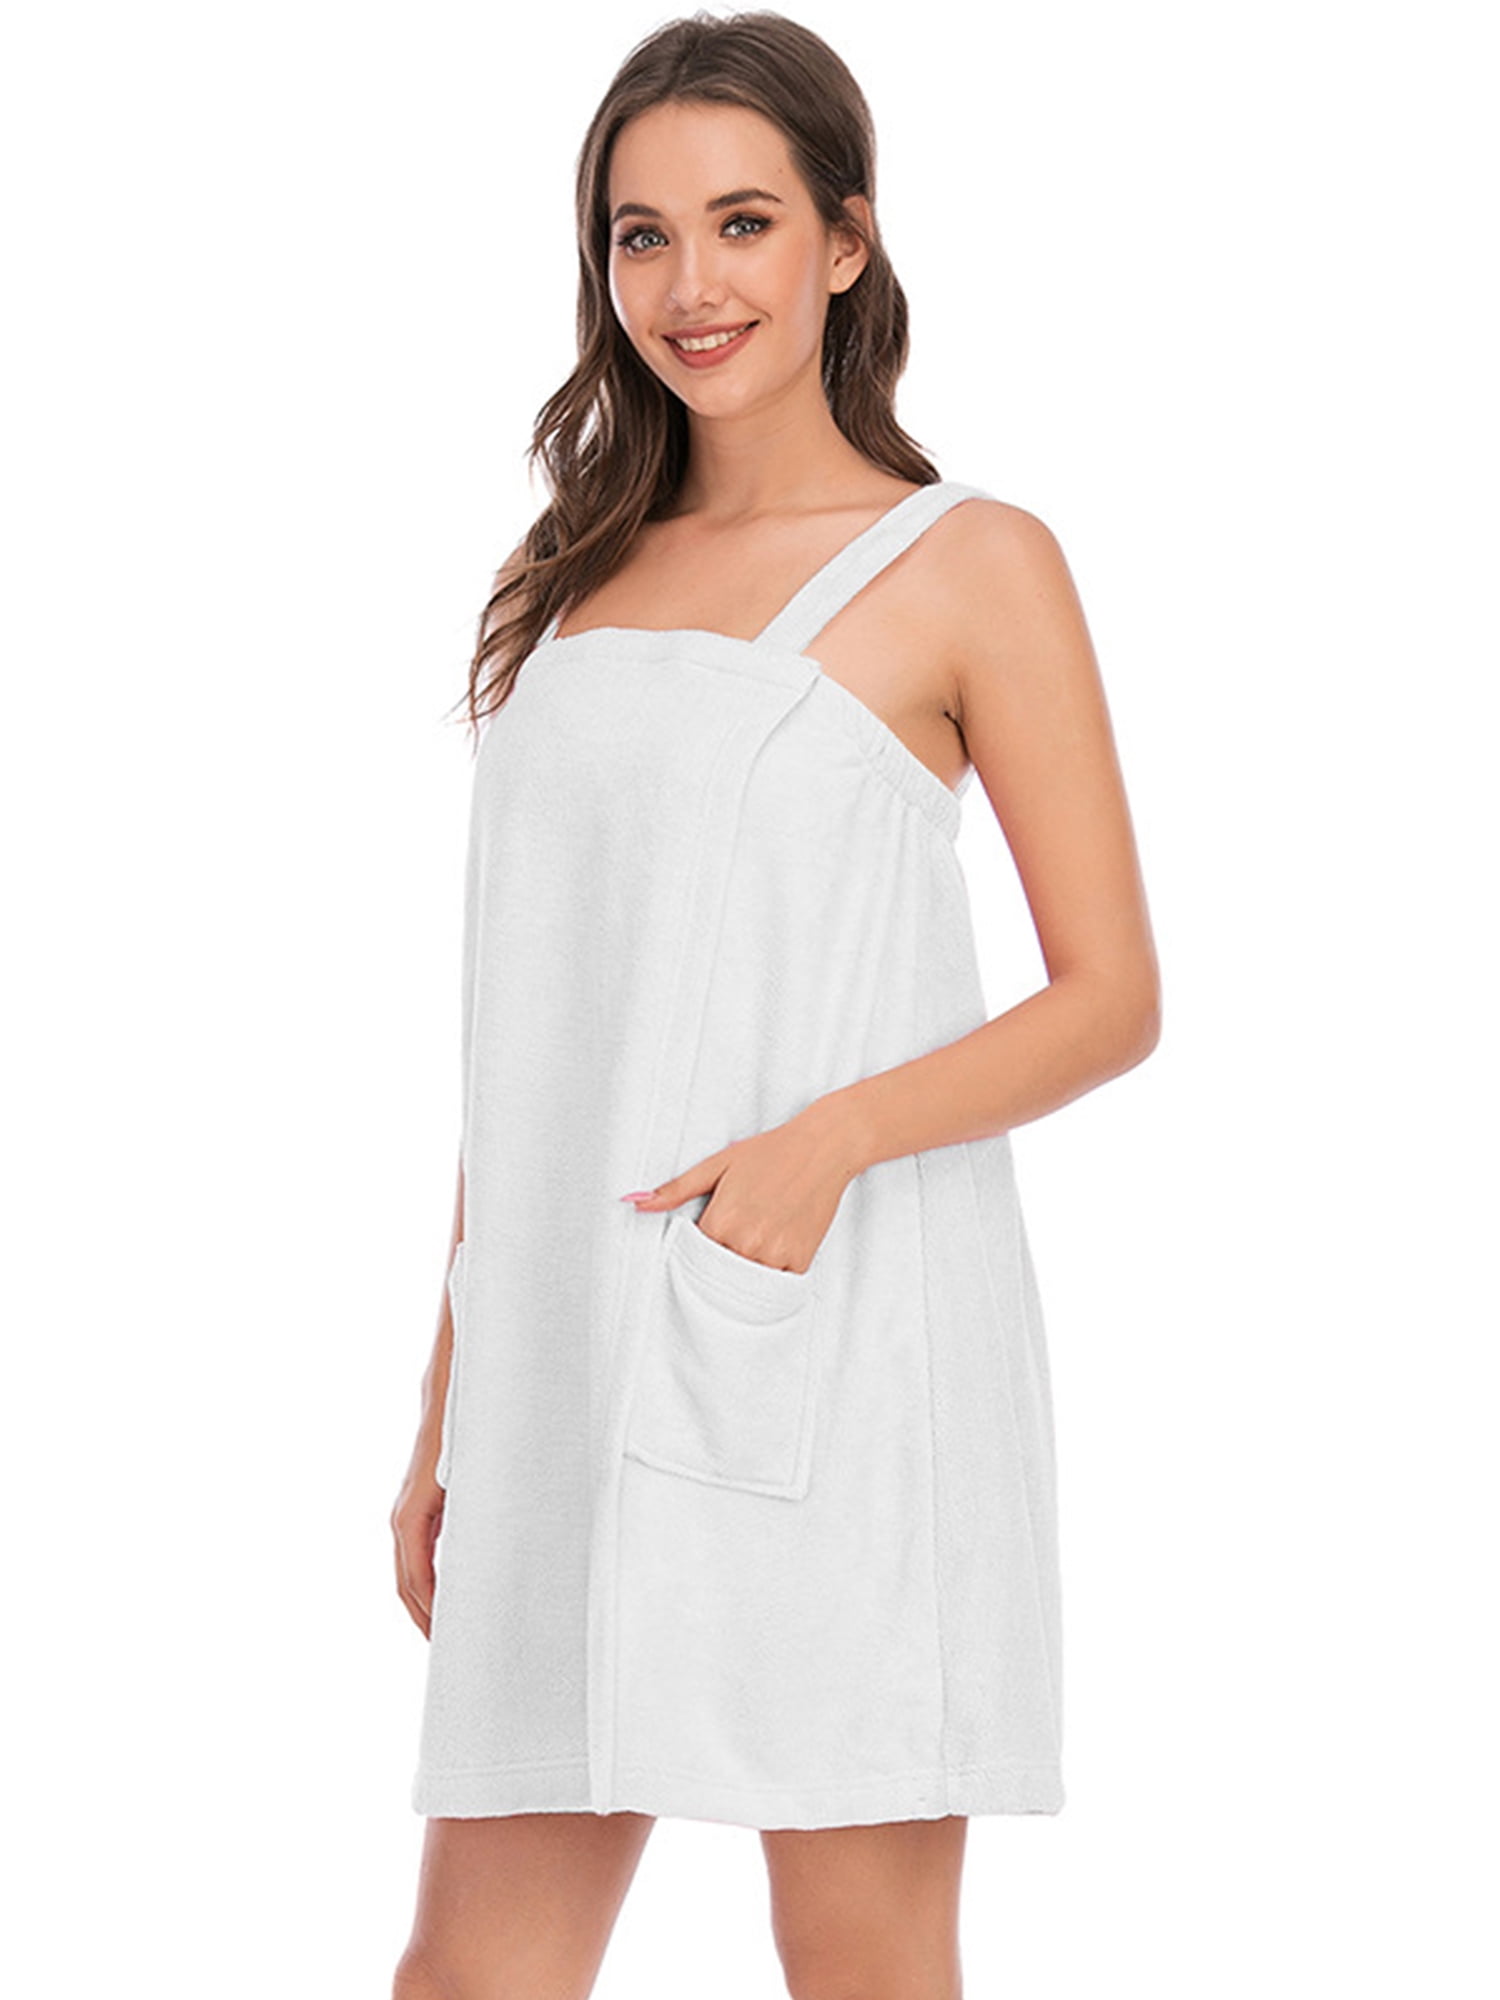 Femme Wrap SERVIETTE avec serviettes éponges Douche Sauna Spa Cover Up Robe Serviettes 